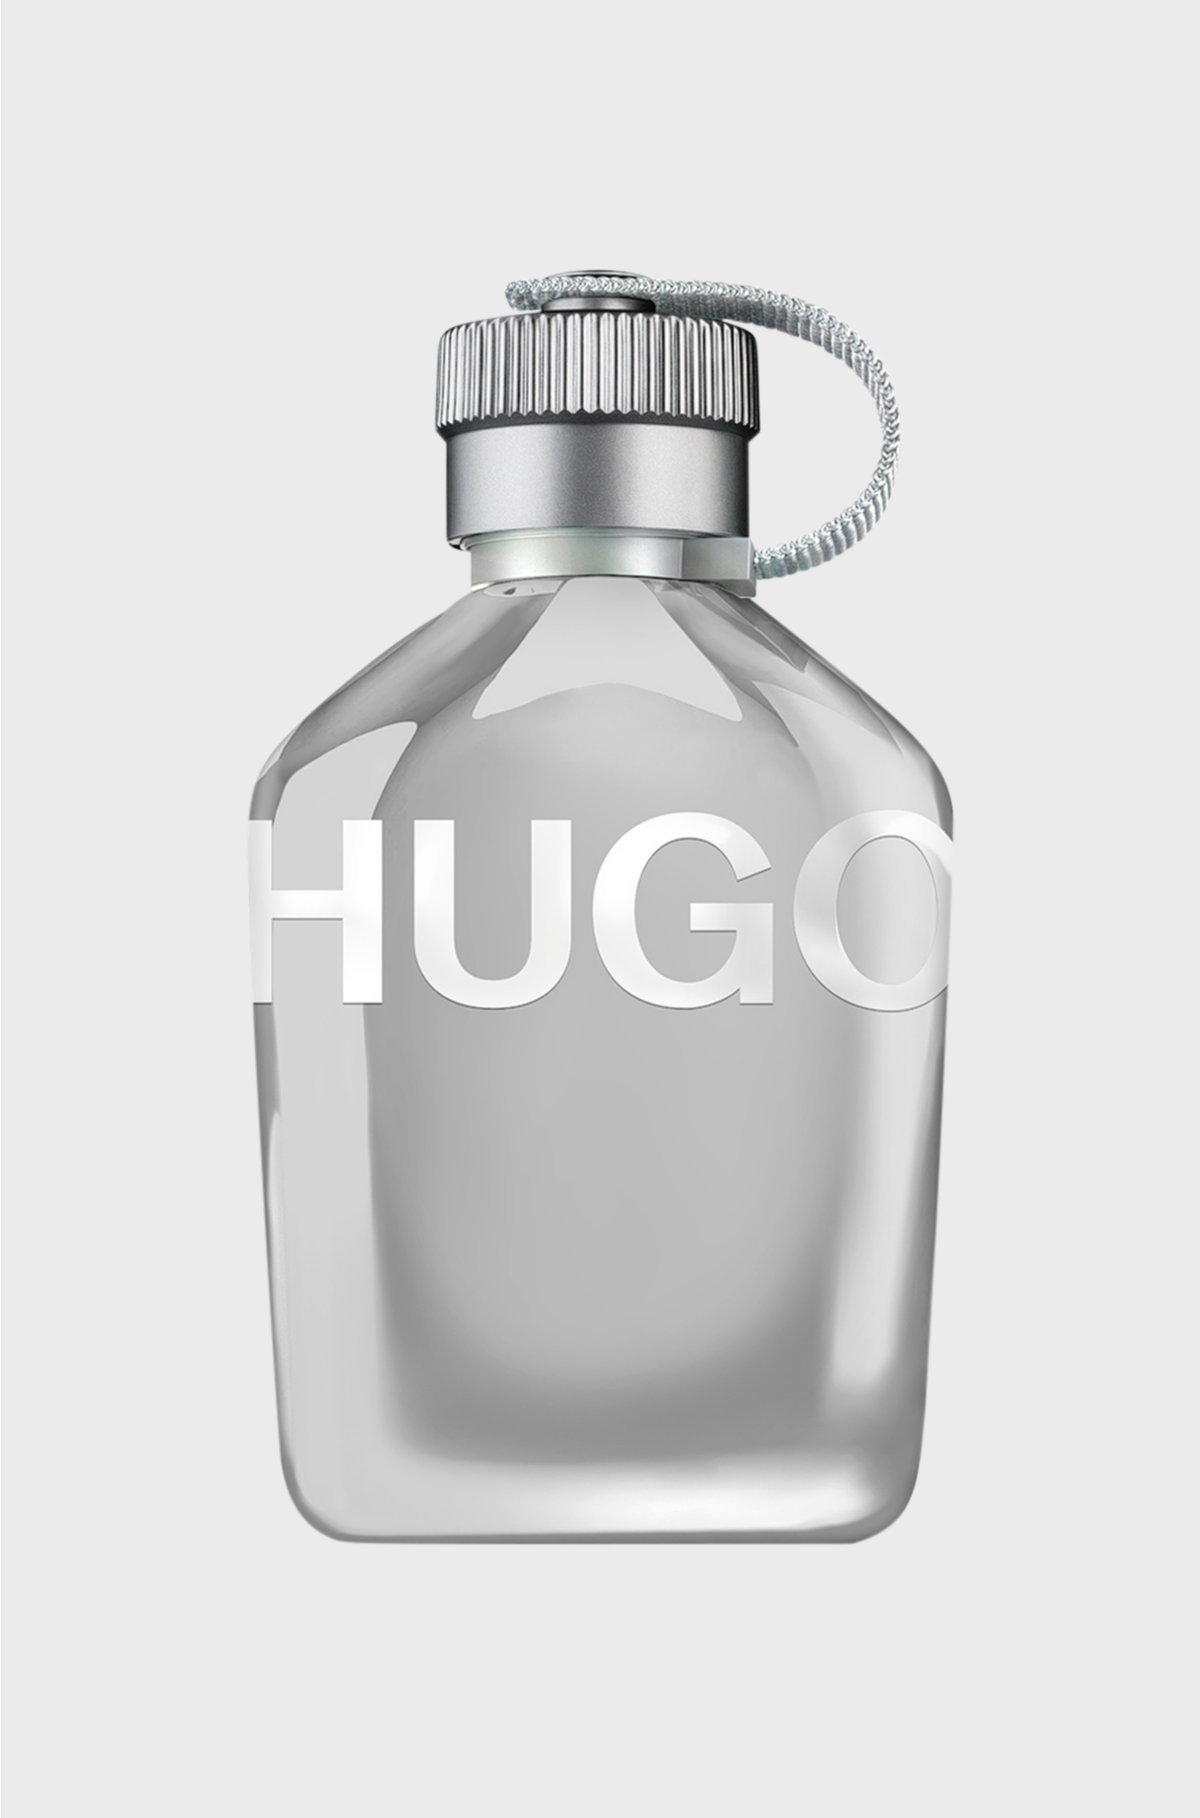 HUGO Reflective Edition eau de toilette 125ml, Assorted-Pre-Pack